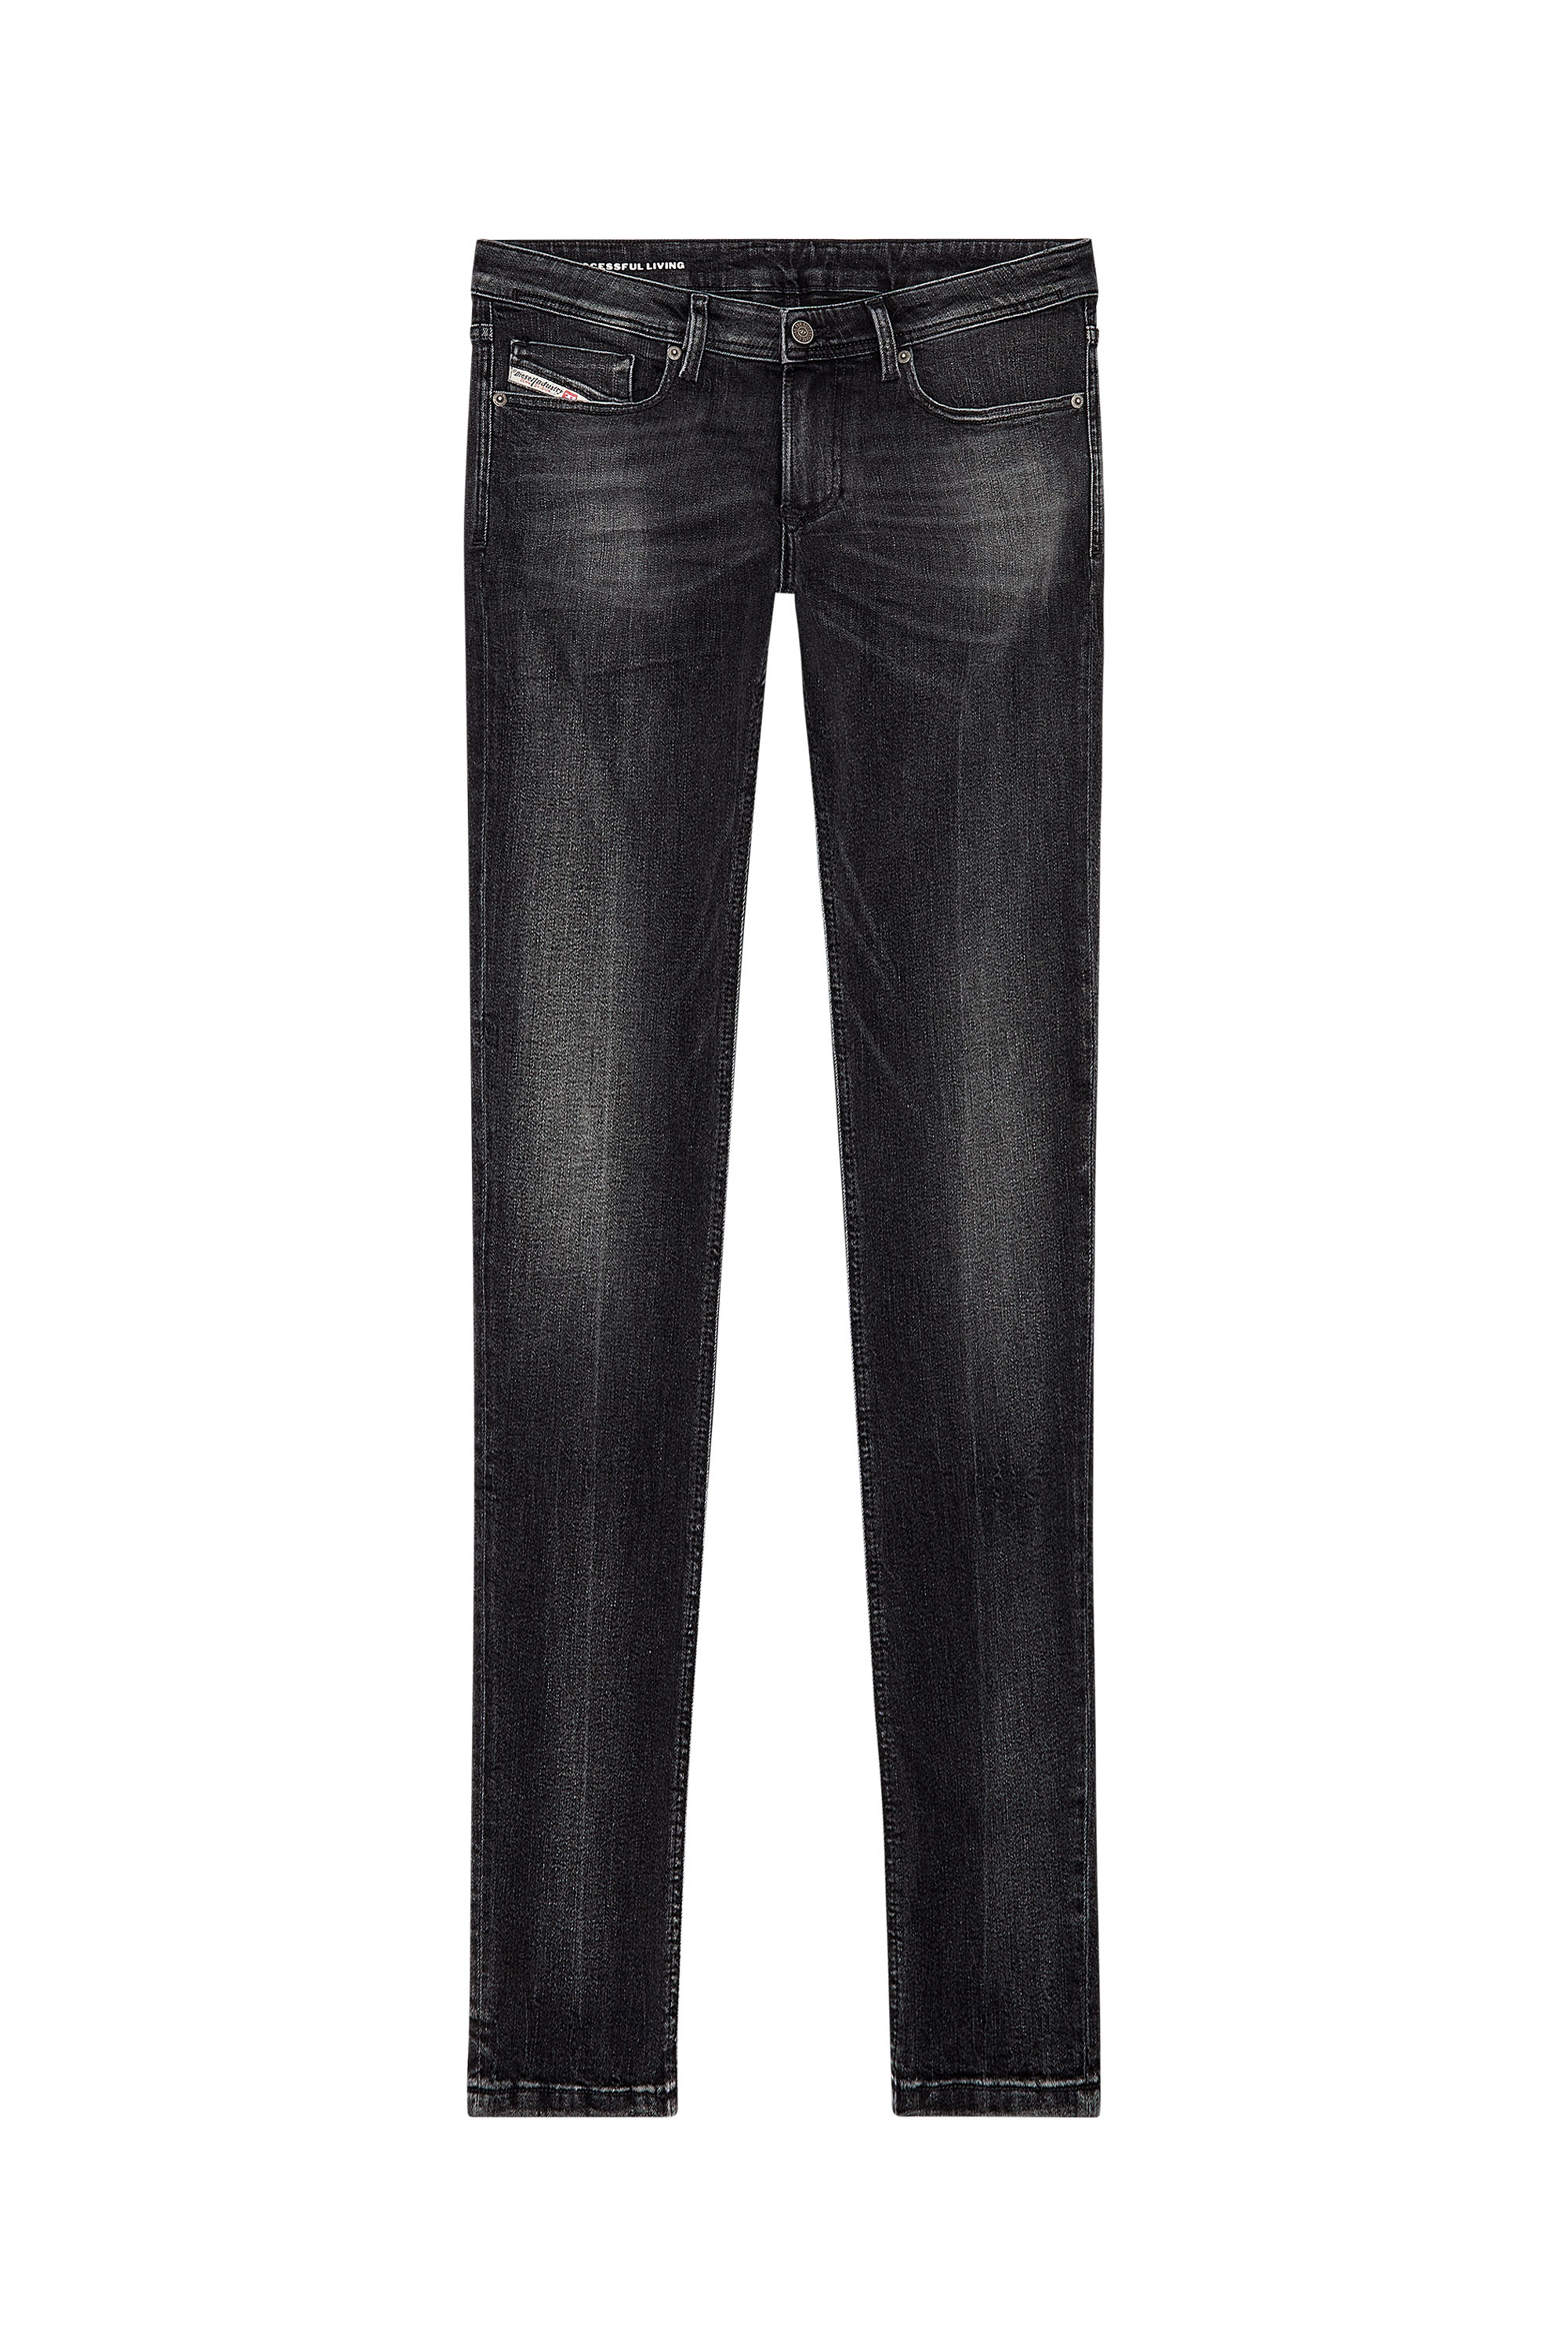 Diesel - Skinny Jeans 1979 Sleenker 0PFAX, Black/Dark grey - Image 3